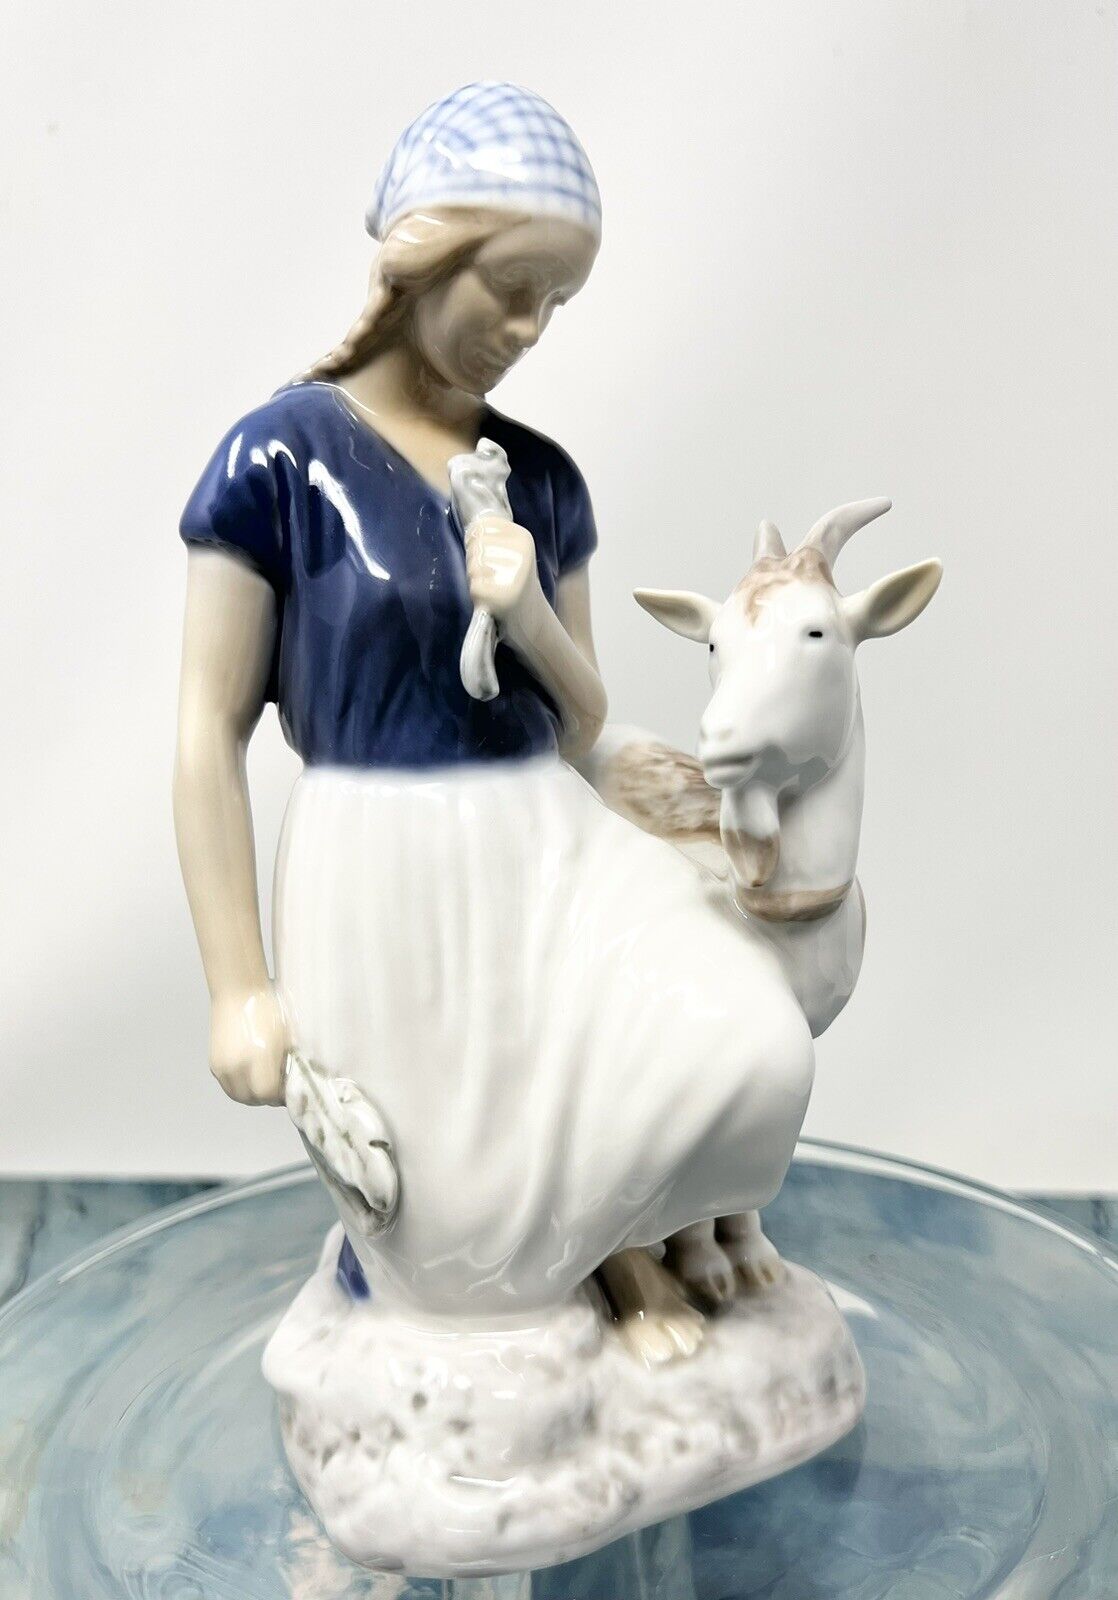 Bing & Grondahl B & G Porcelain #2180 B Denmark Girl with Goat Figurine Nice